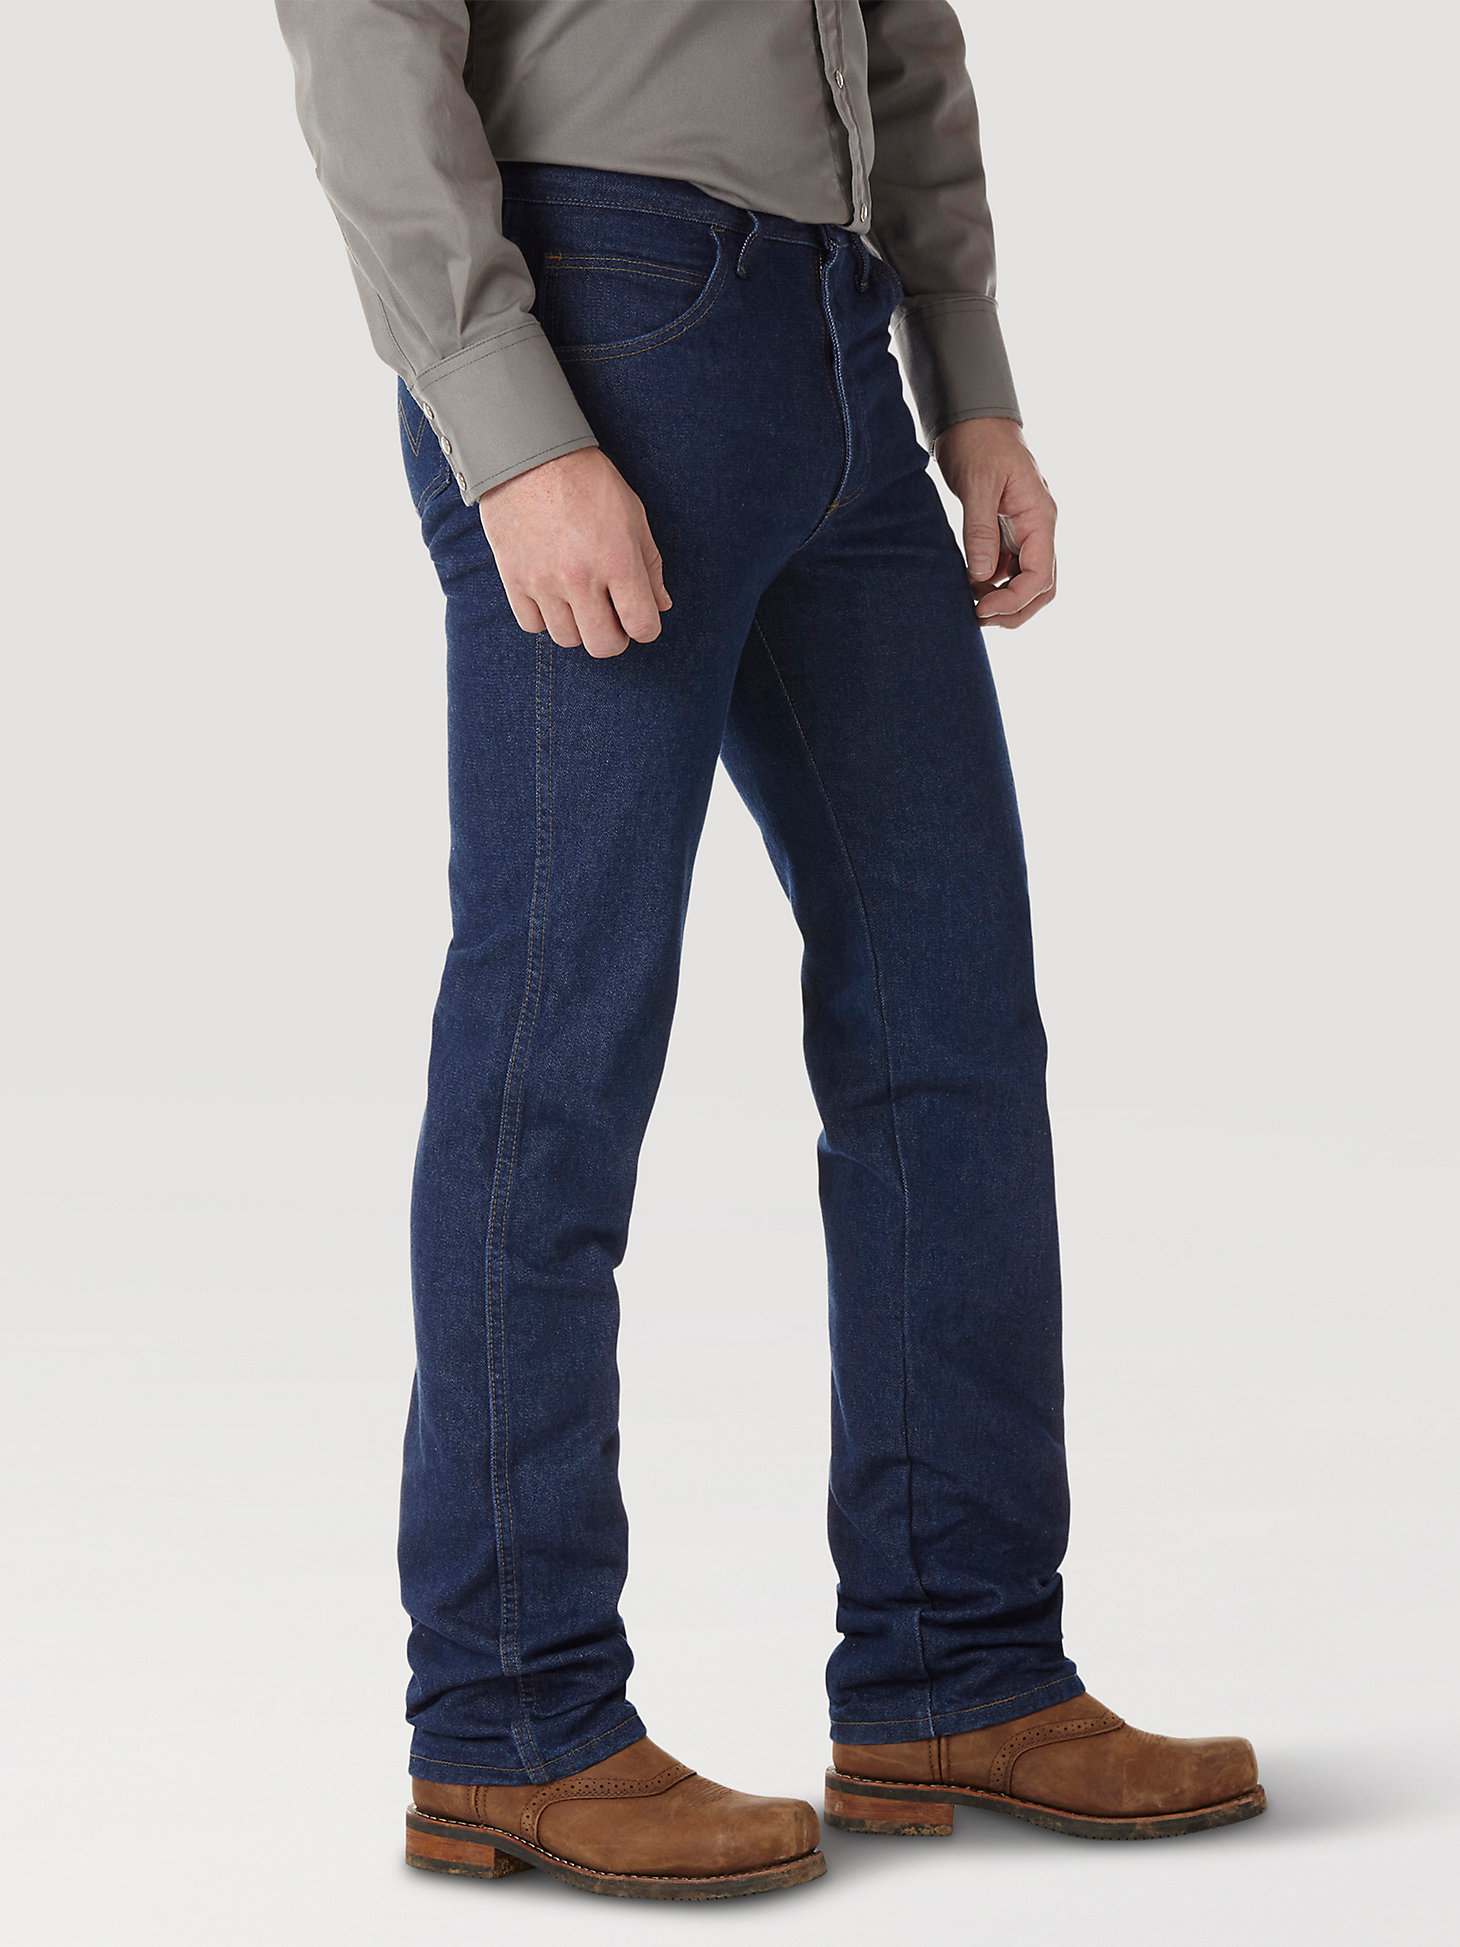 Wrangler® FR Flame Resistant Slim Fit Jean in Prewash alternative view 1